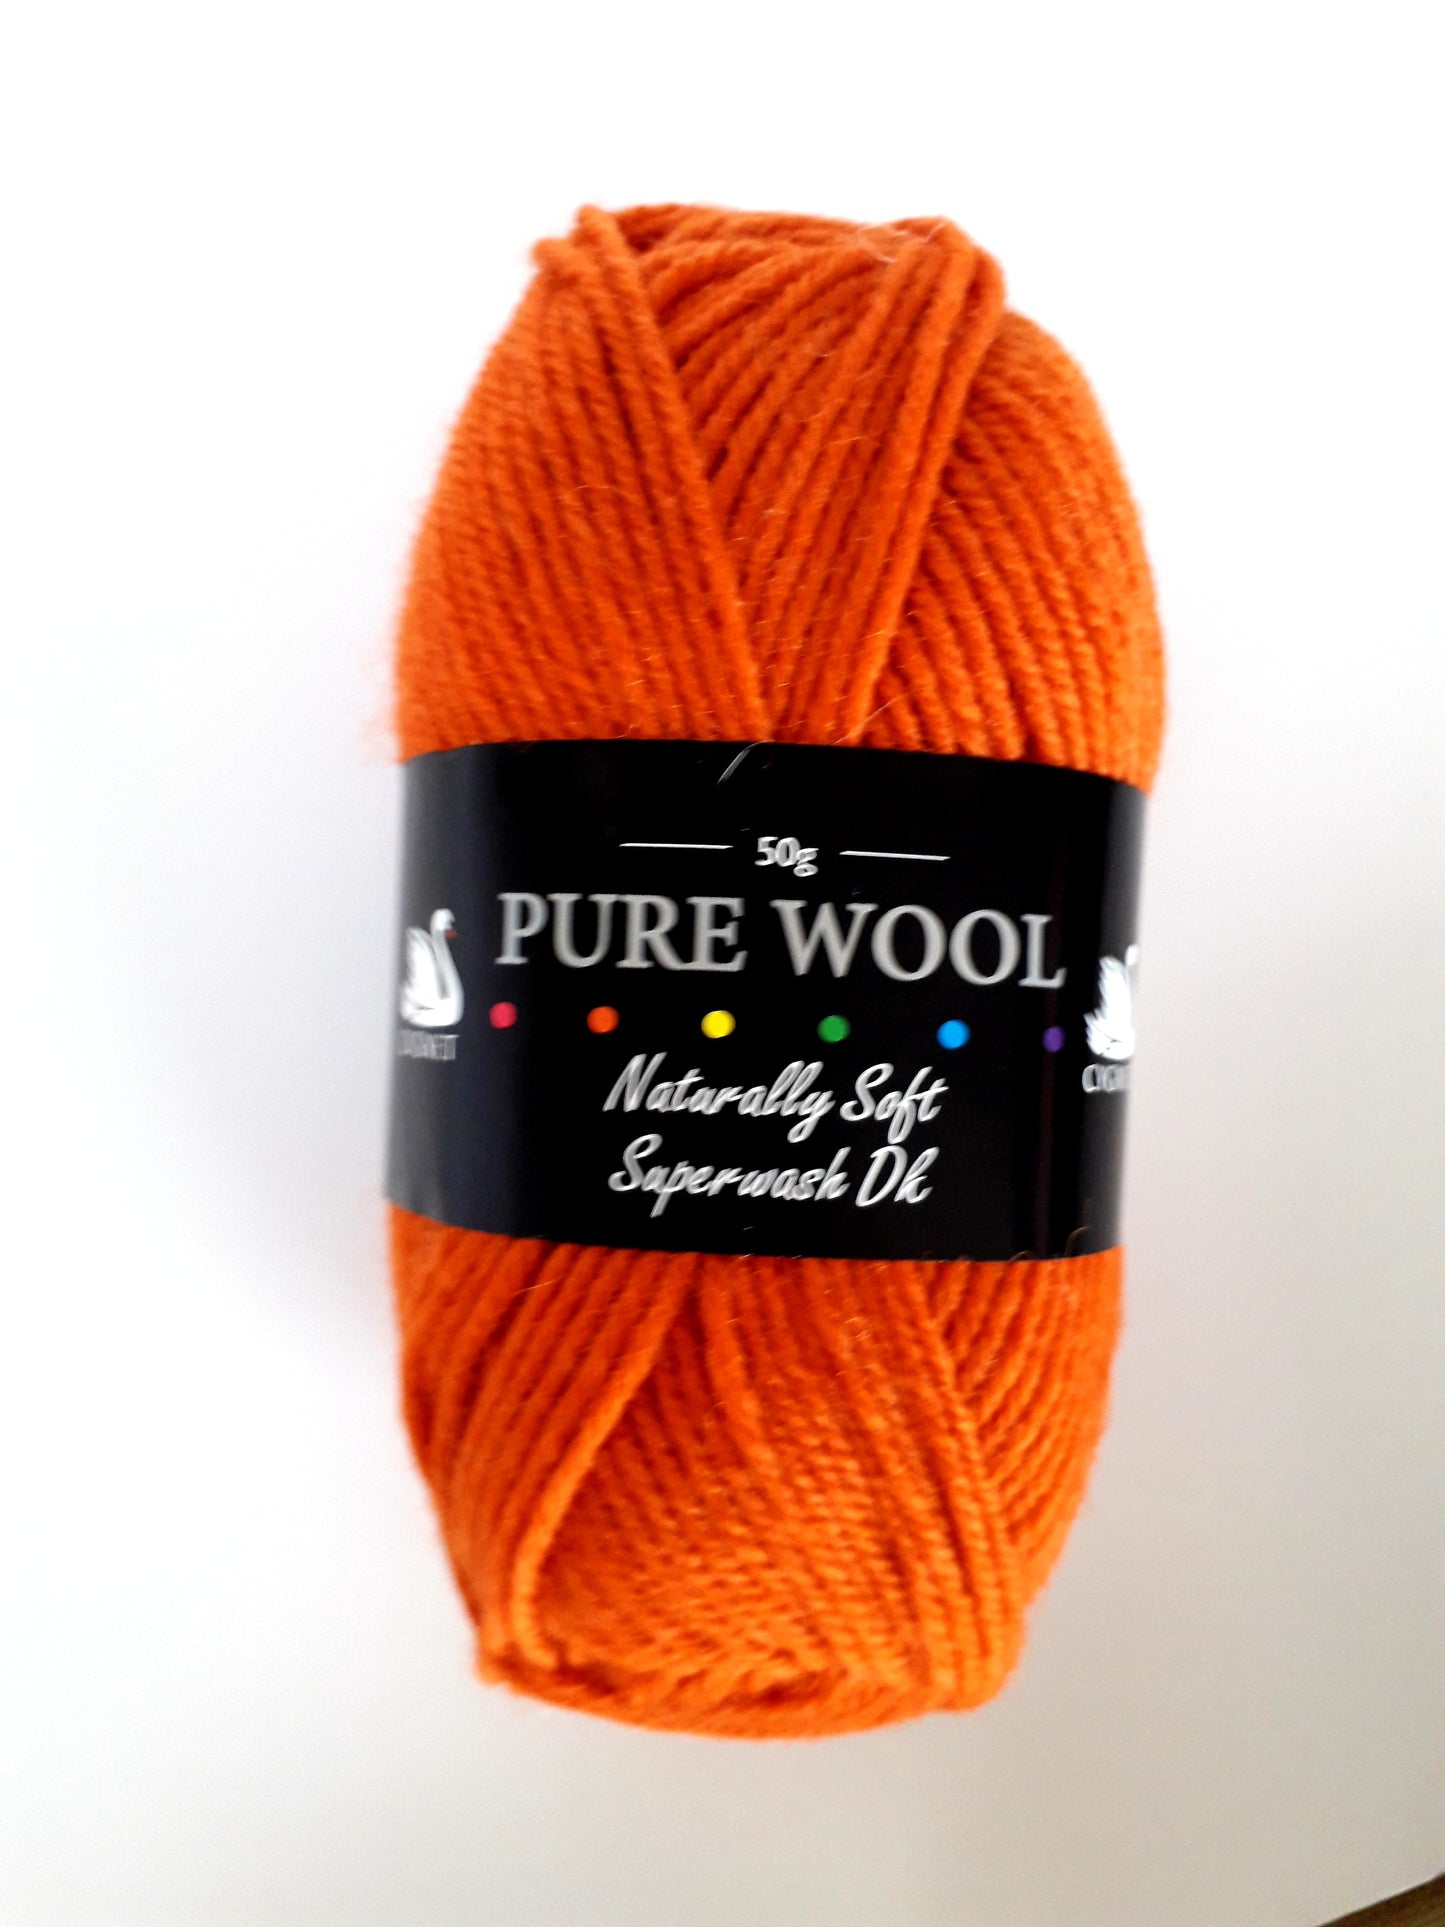 A bright rusty orange coloured ball of wool yarn